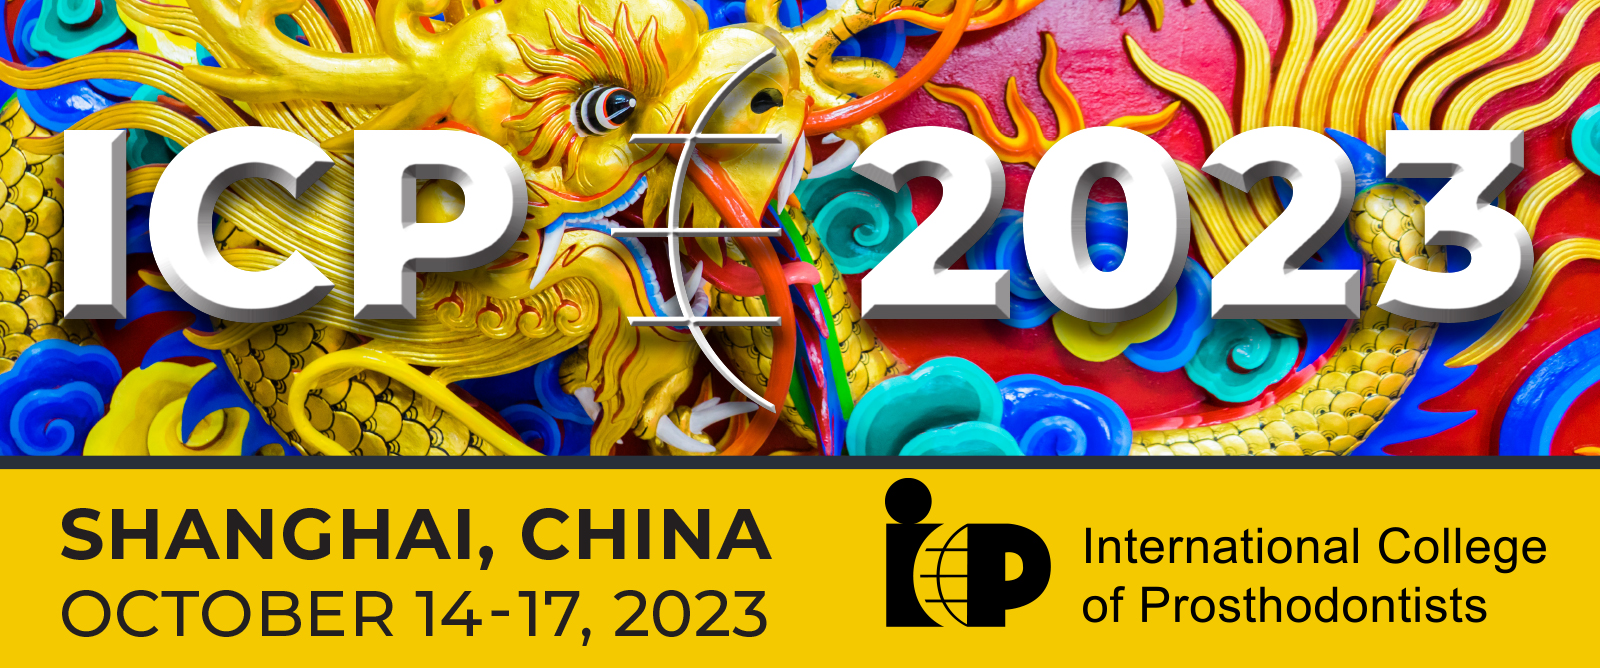 ICP 2023: Shanghai, China